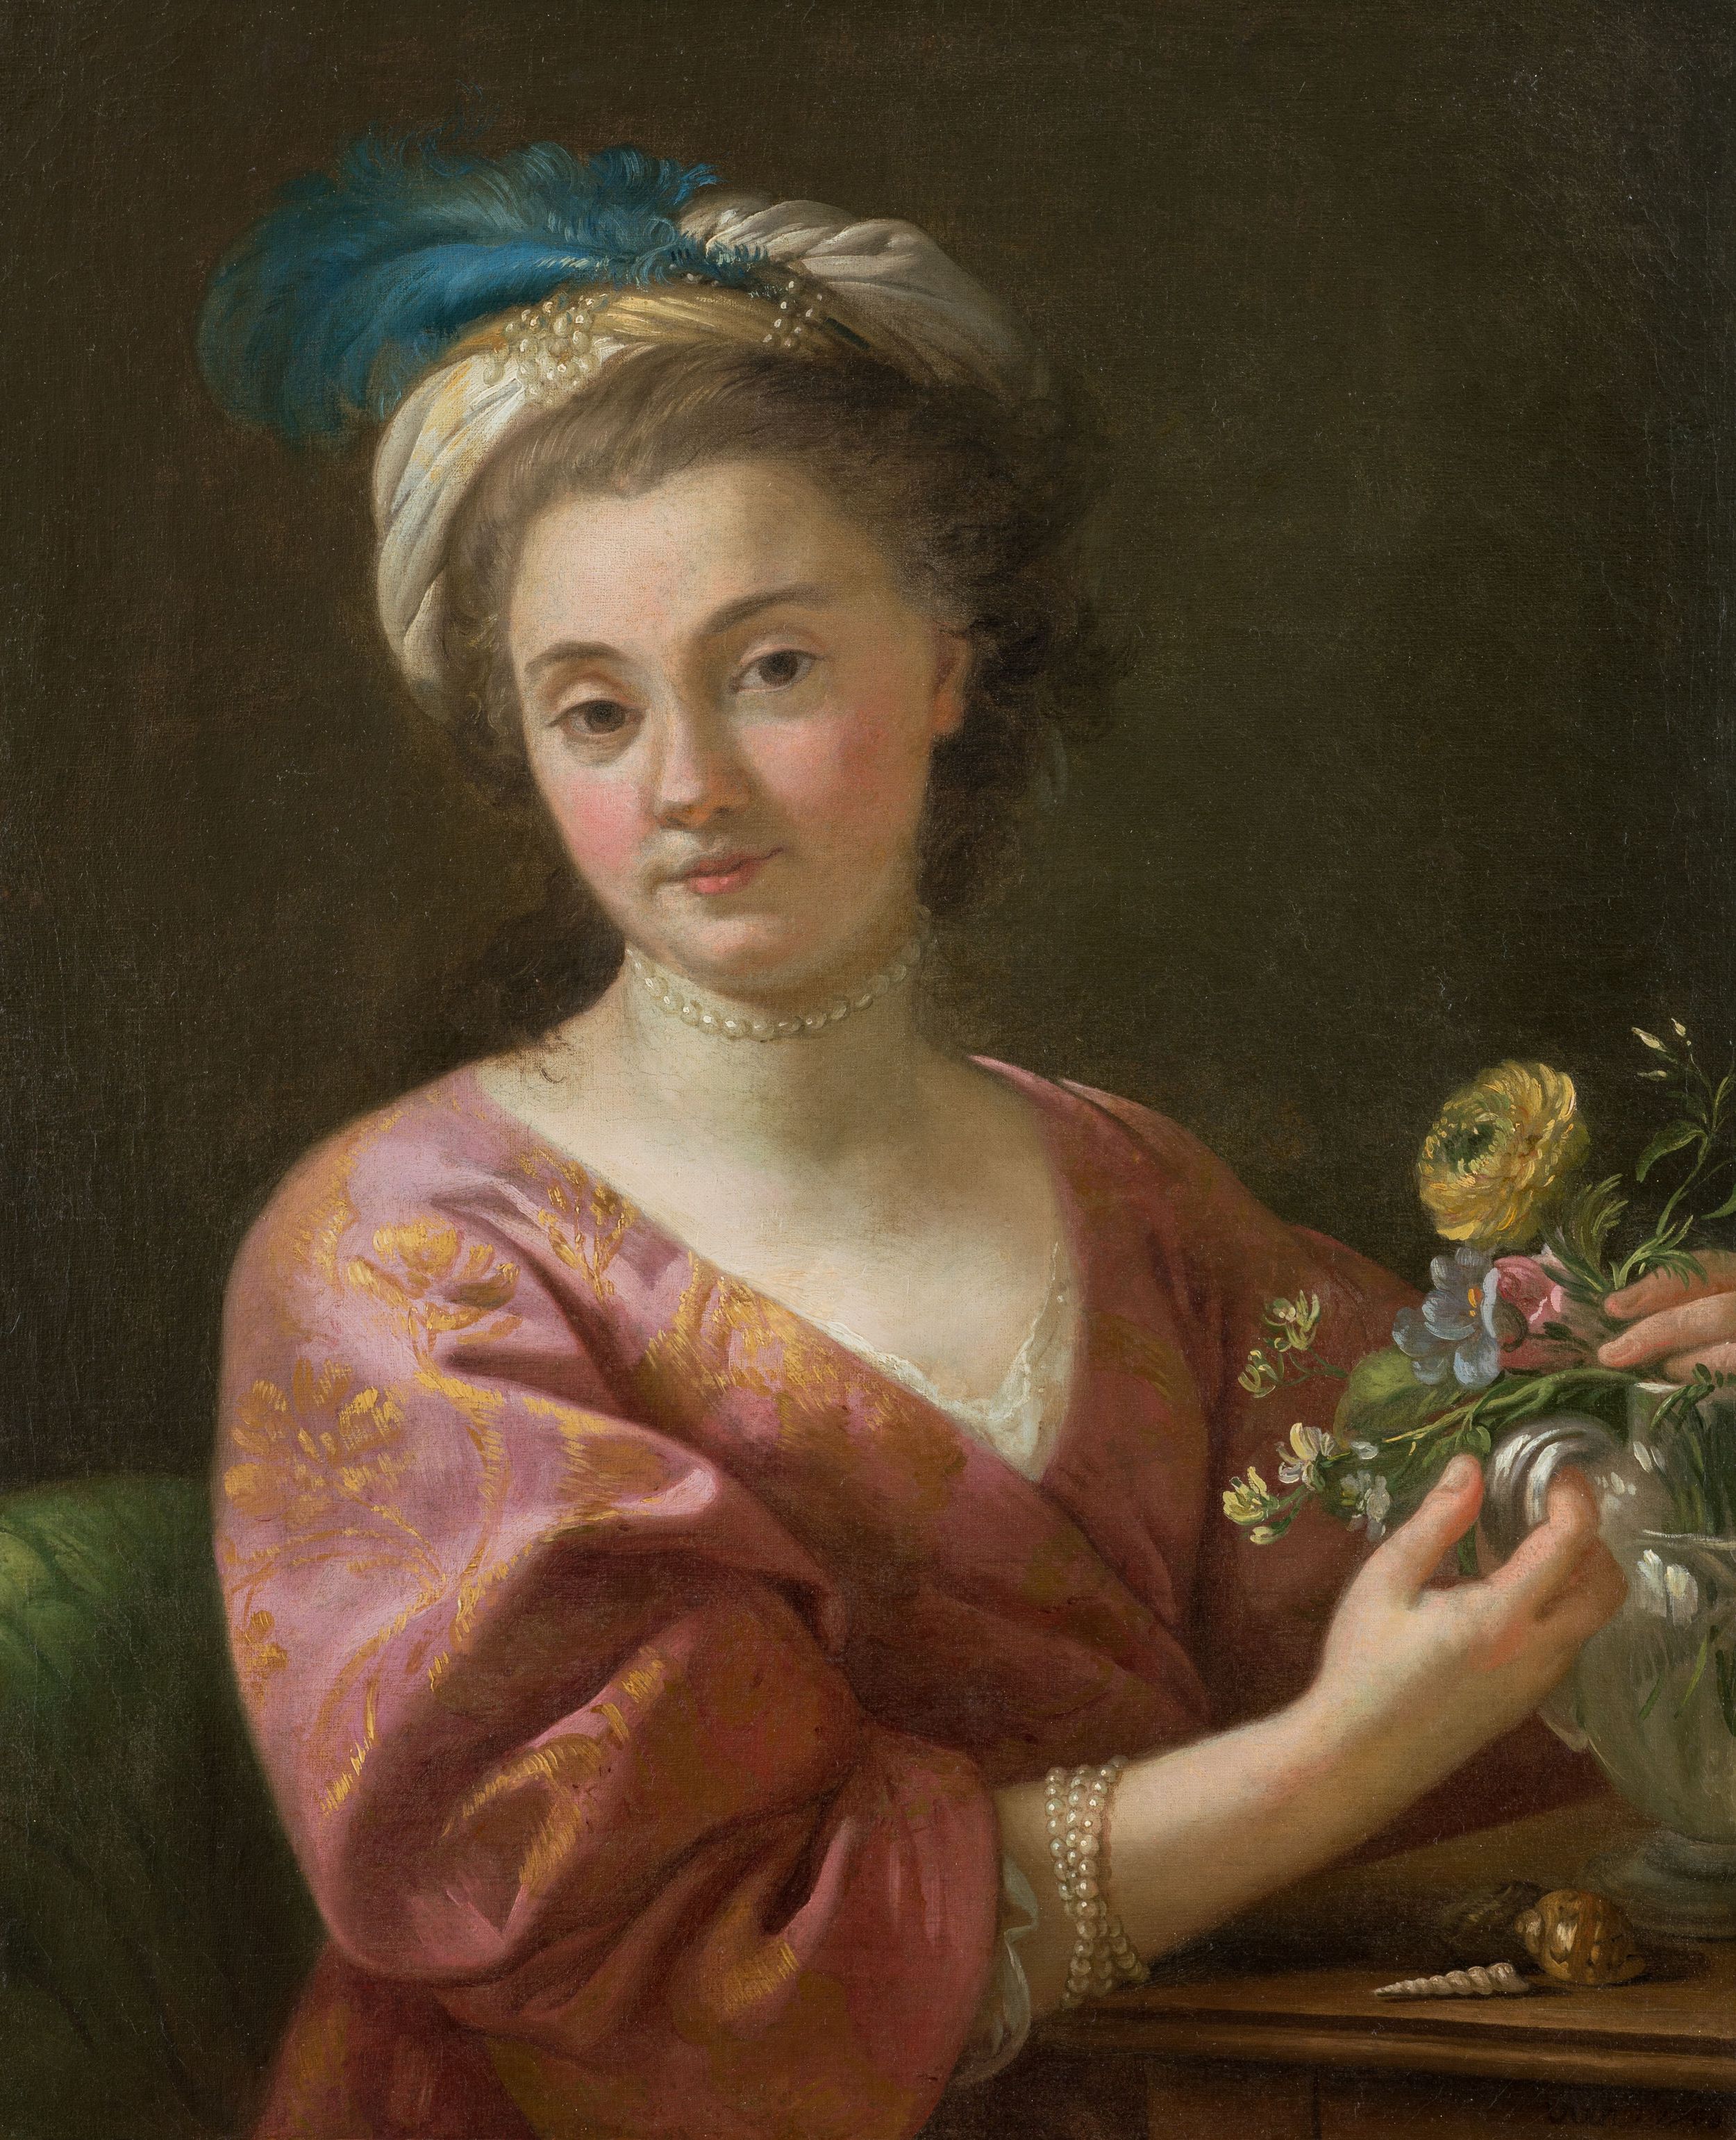 Vien, Portrait de madame Vien, 1760, Huile sur toile, Montpellier, musée Fabre